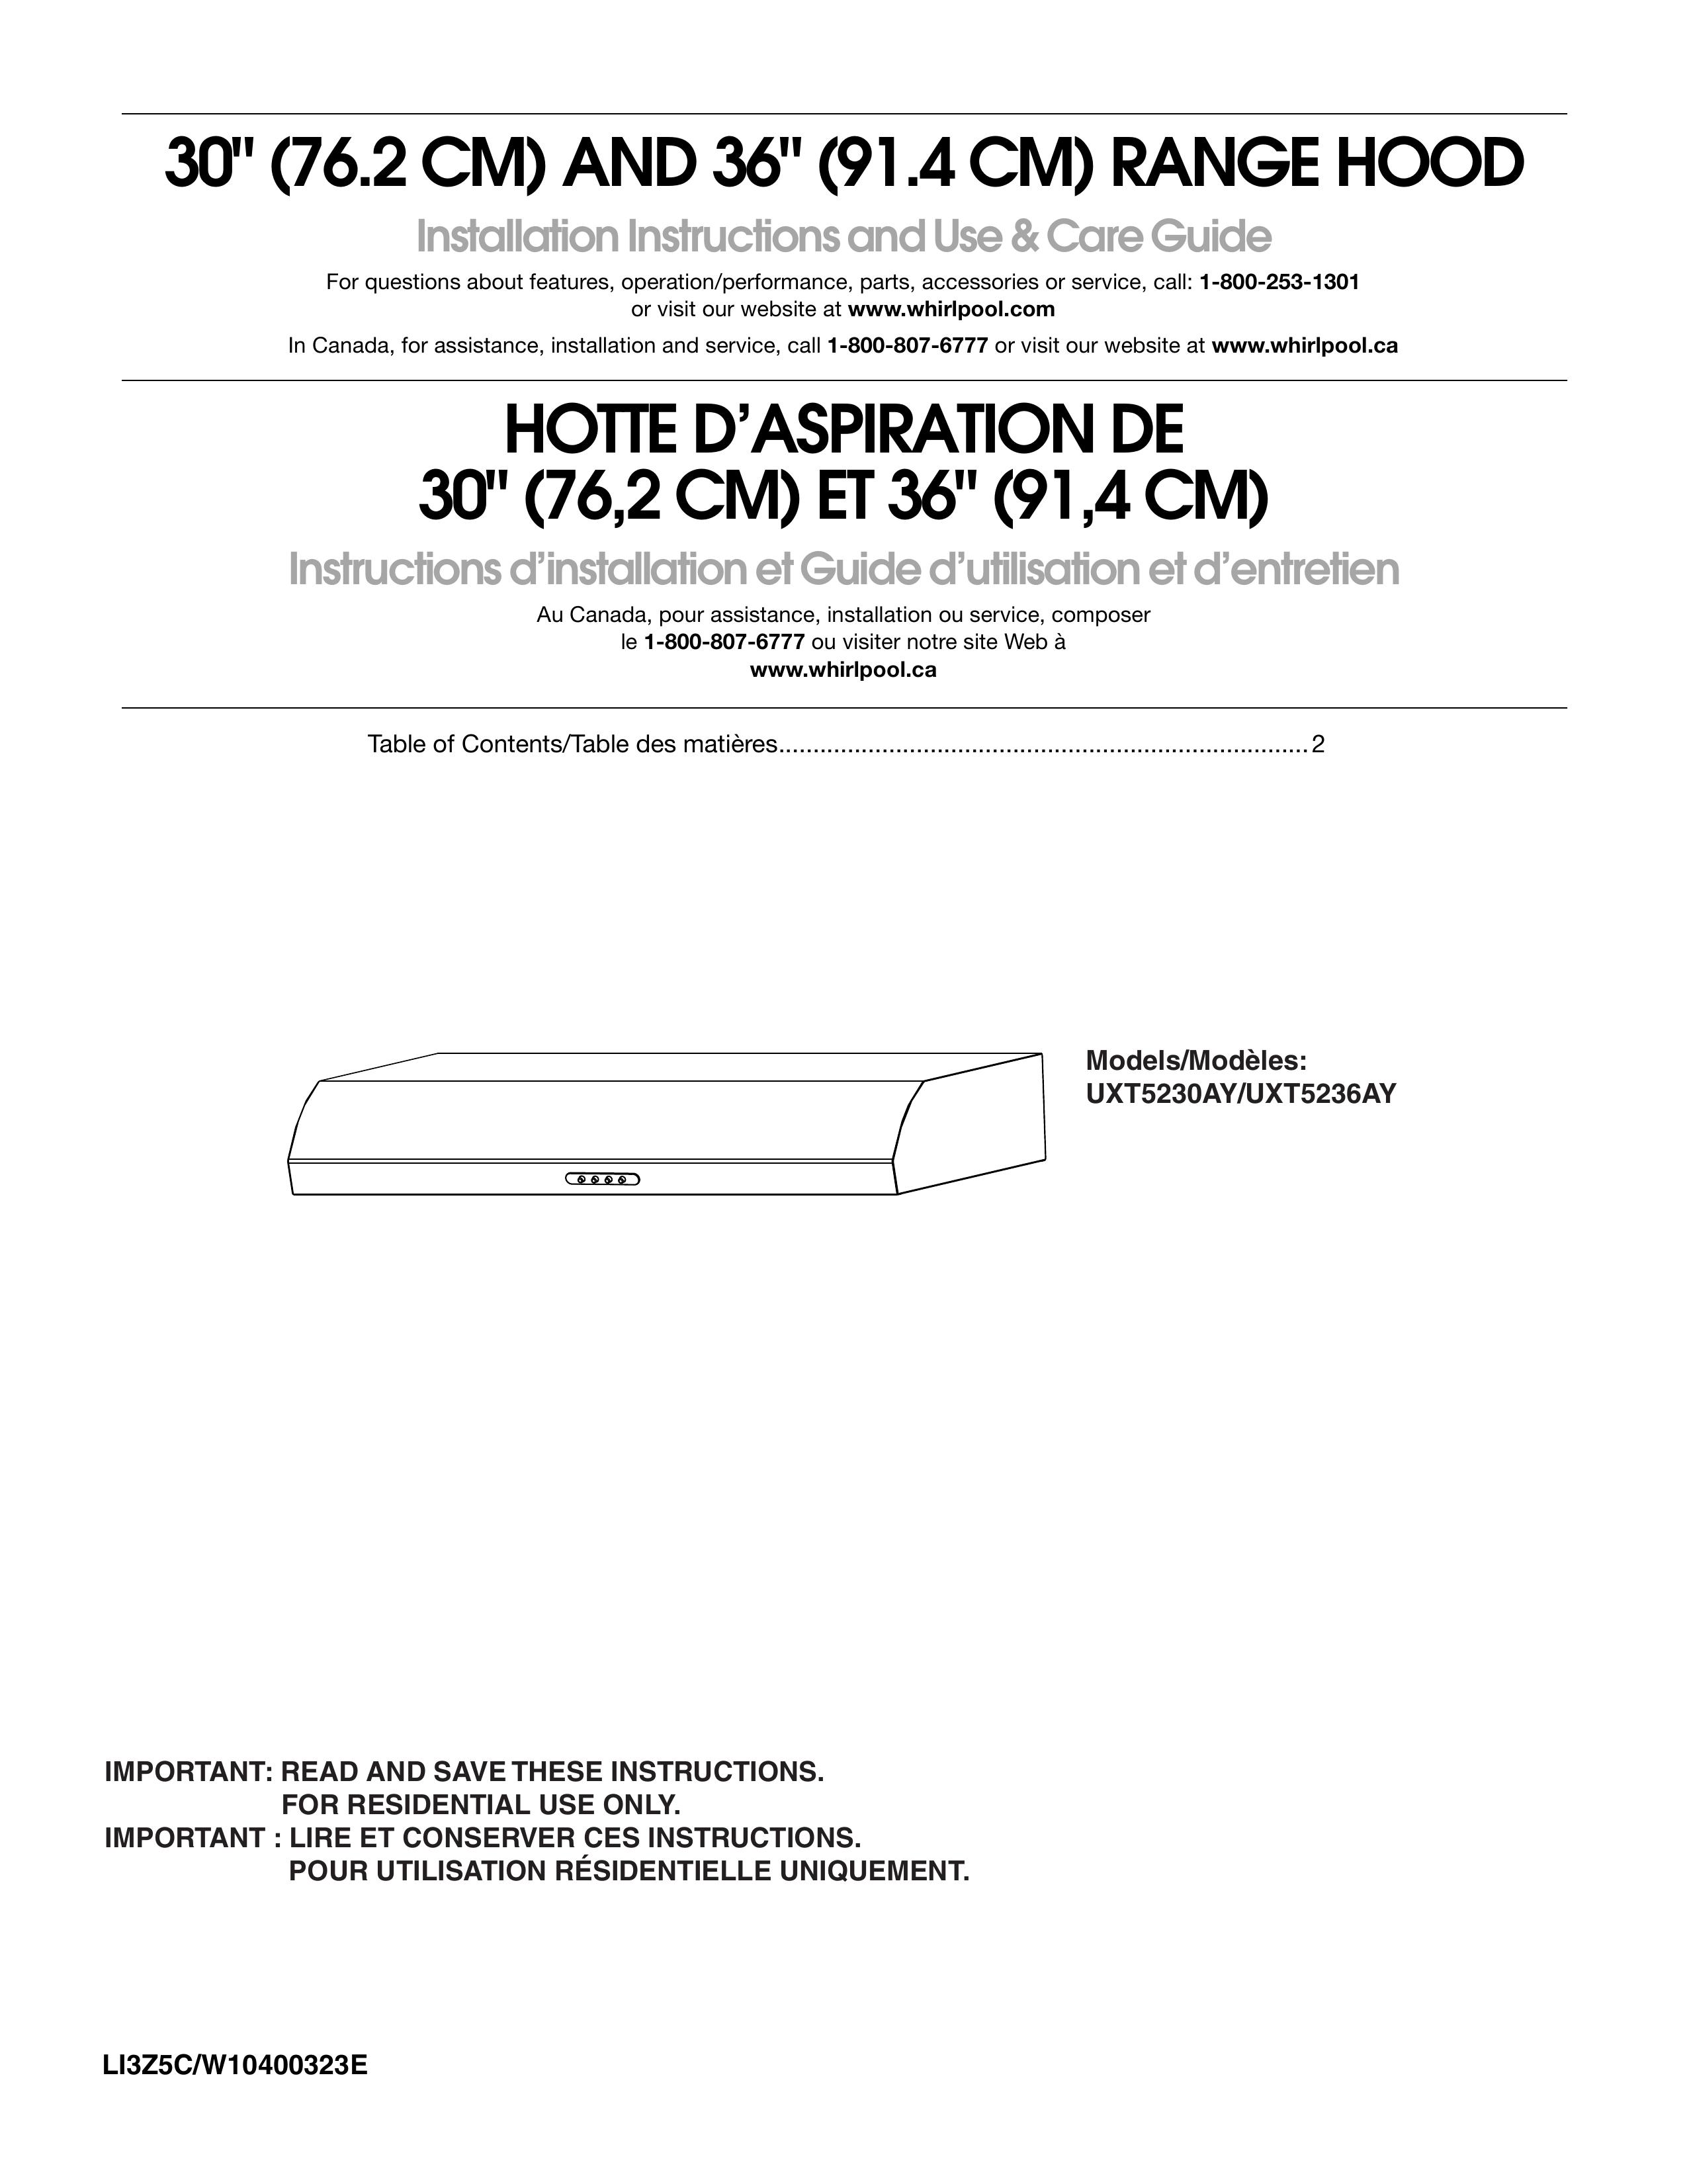 Maytag UXT5236AY Ventilation Hood User Manual